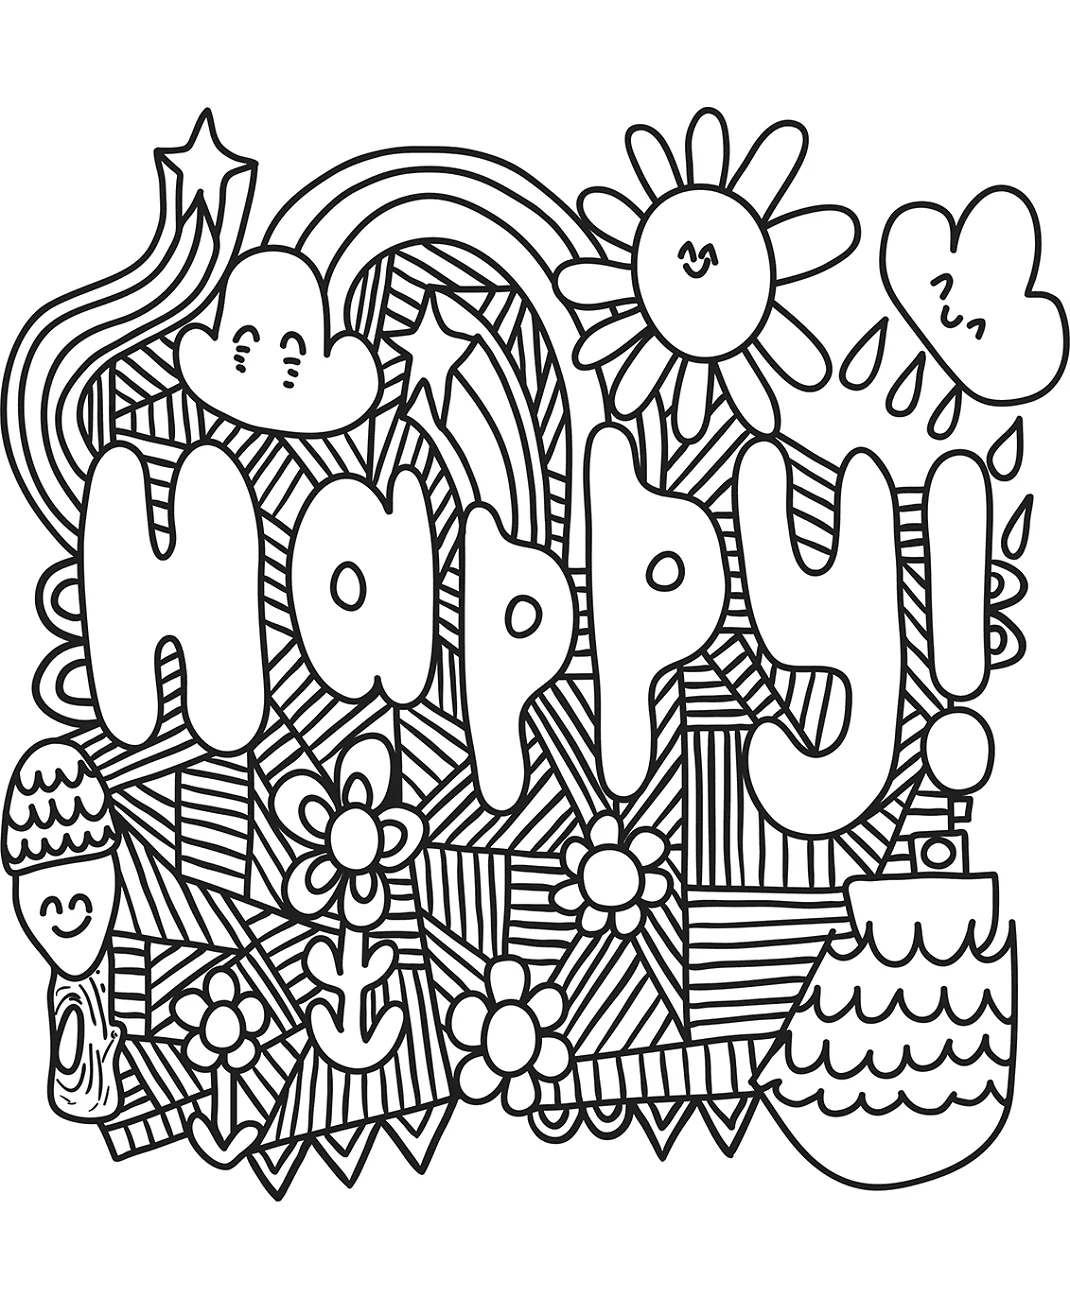 Happy Doodle Art